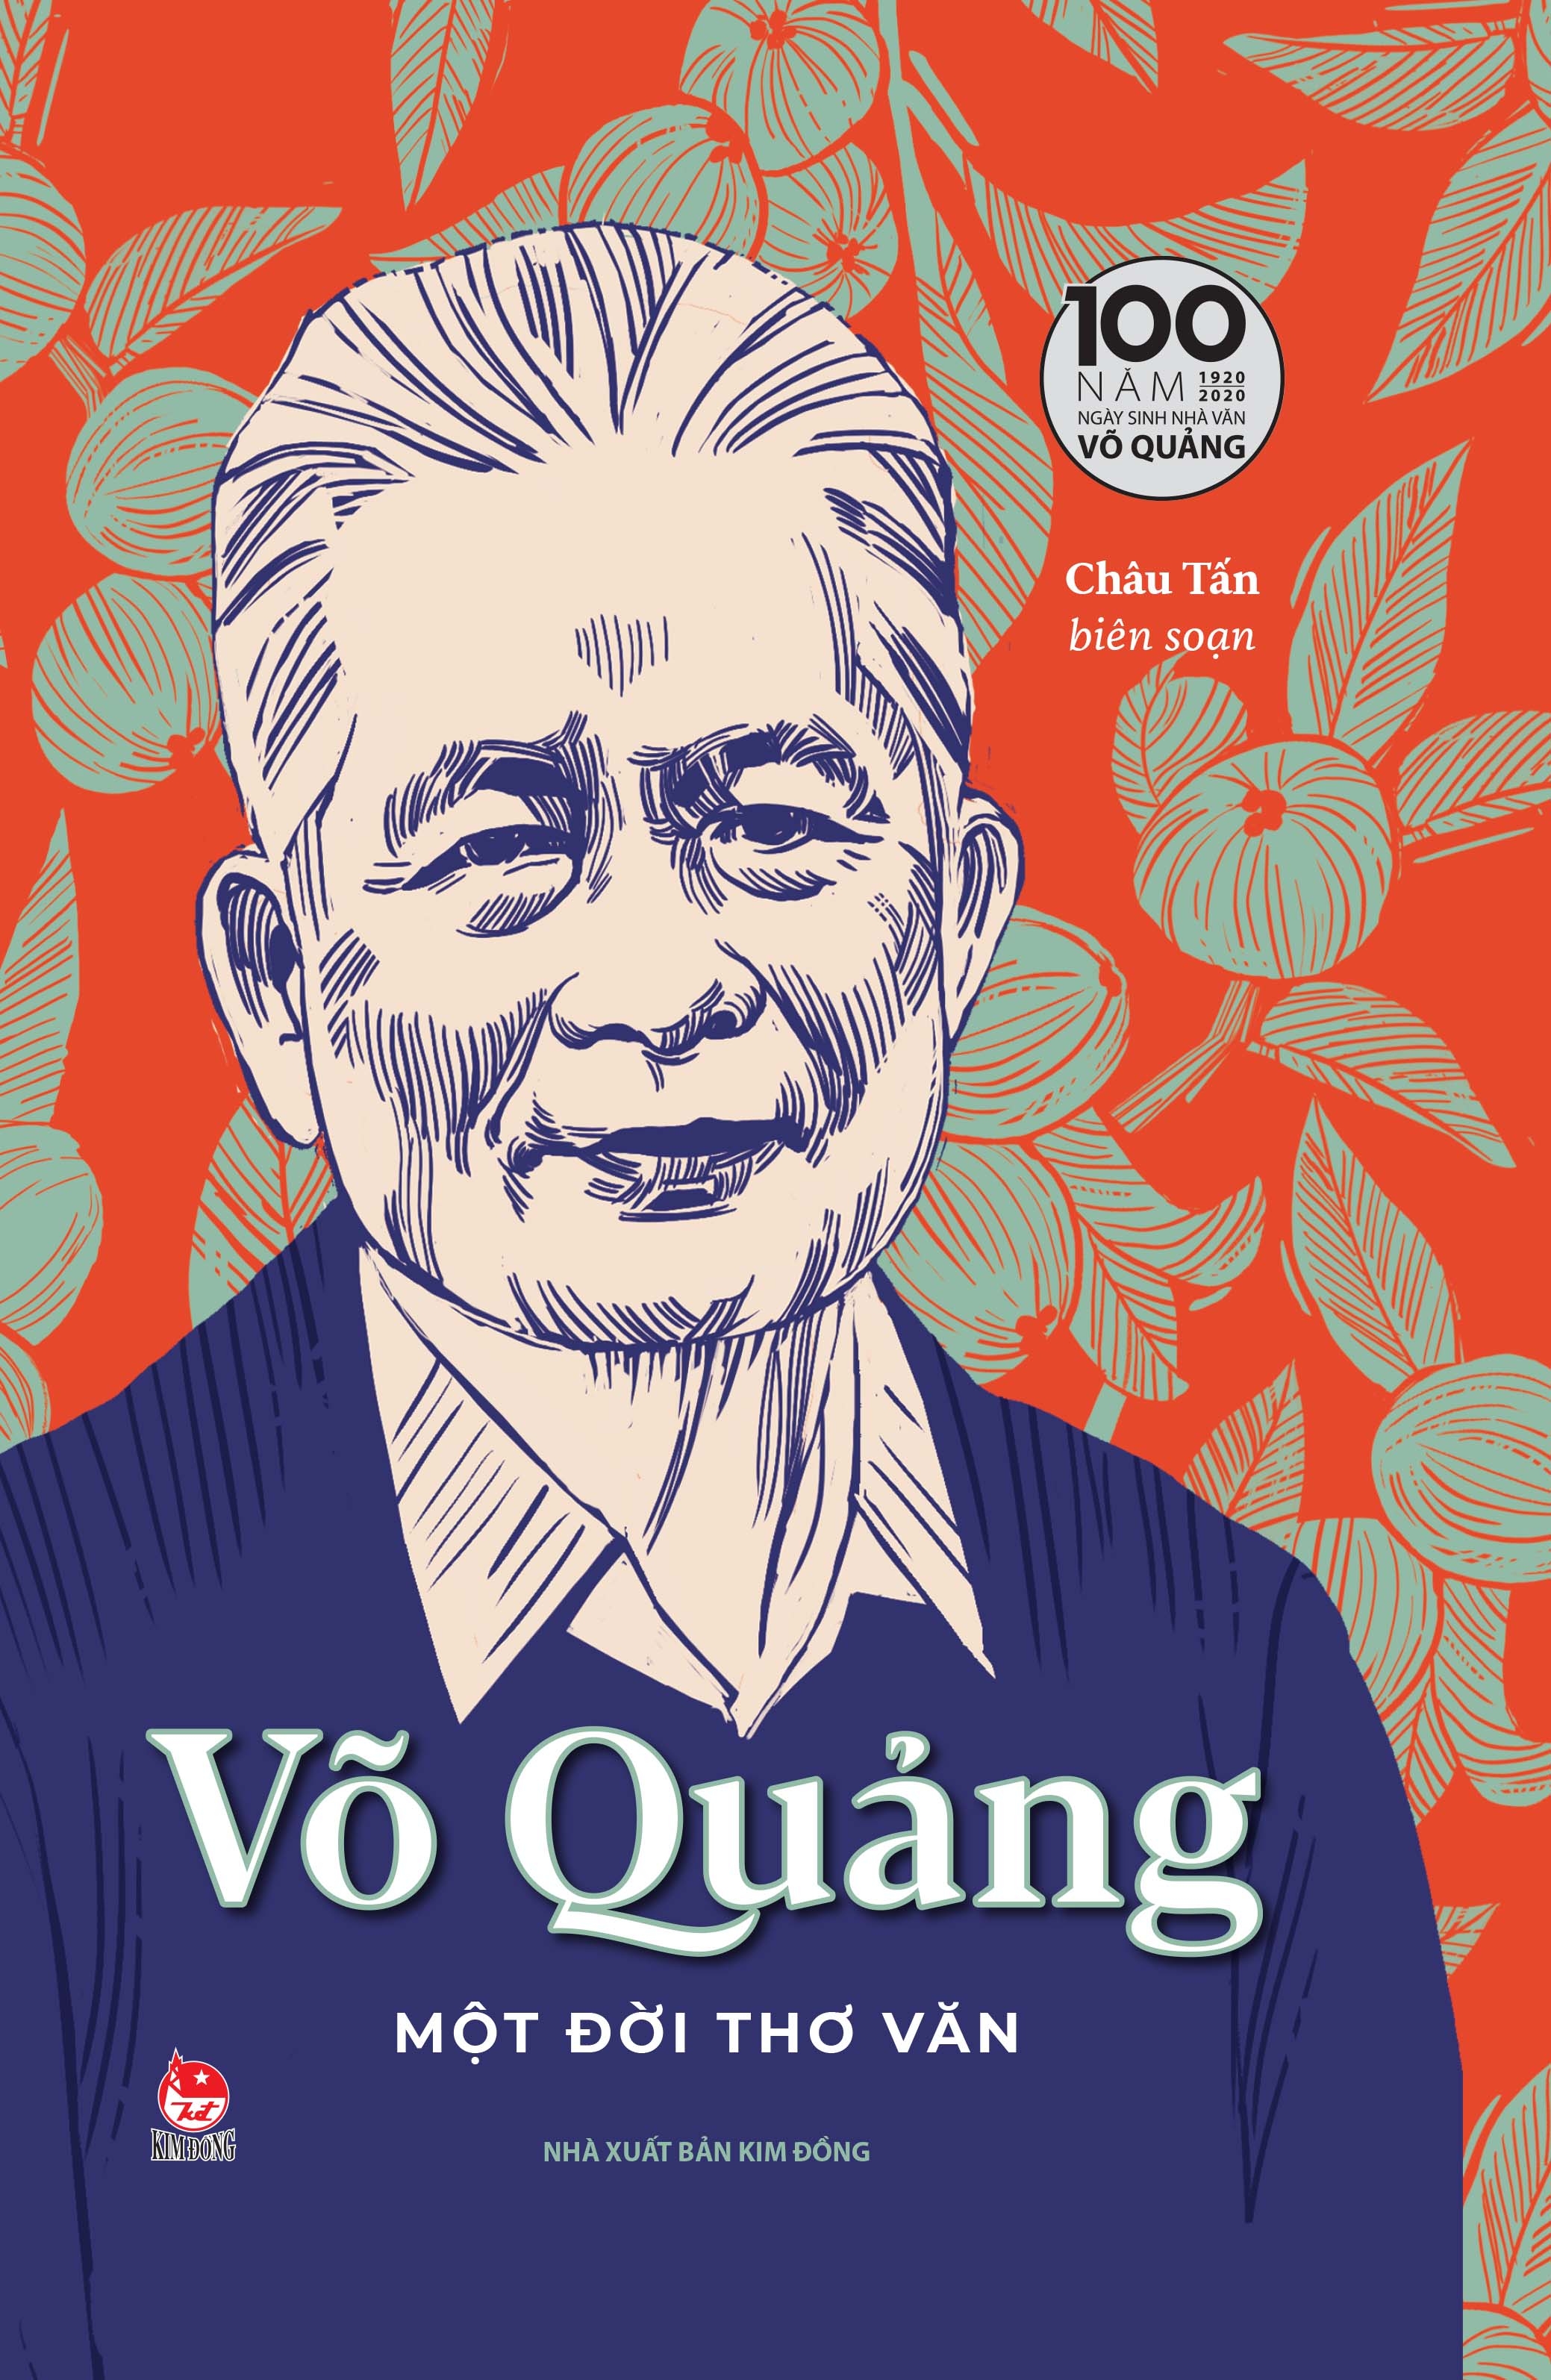 Võ Quảng - Một Đời Thơ Văn - Ấn Bản Kỉ Niệm 100 Năm Ngày Sinh Nhà Văn Võ Quảng PDF